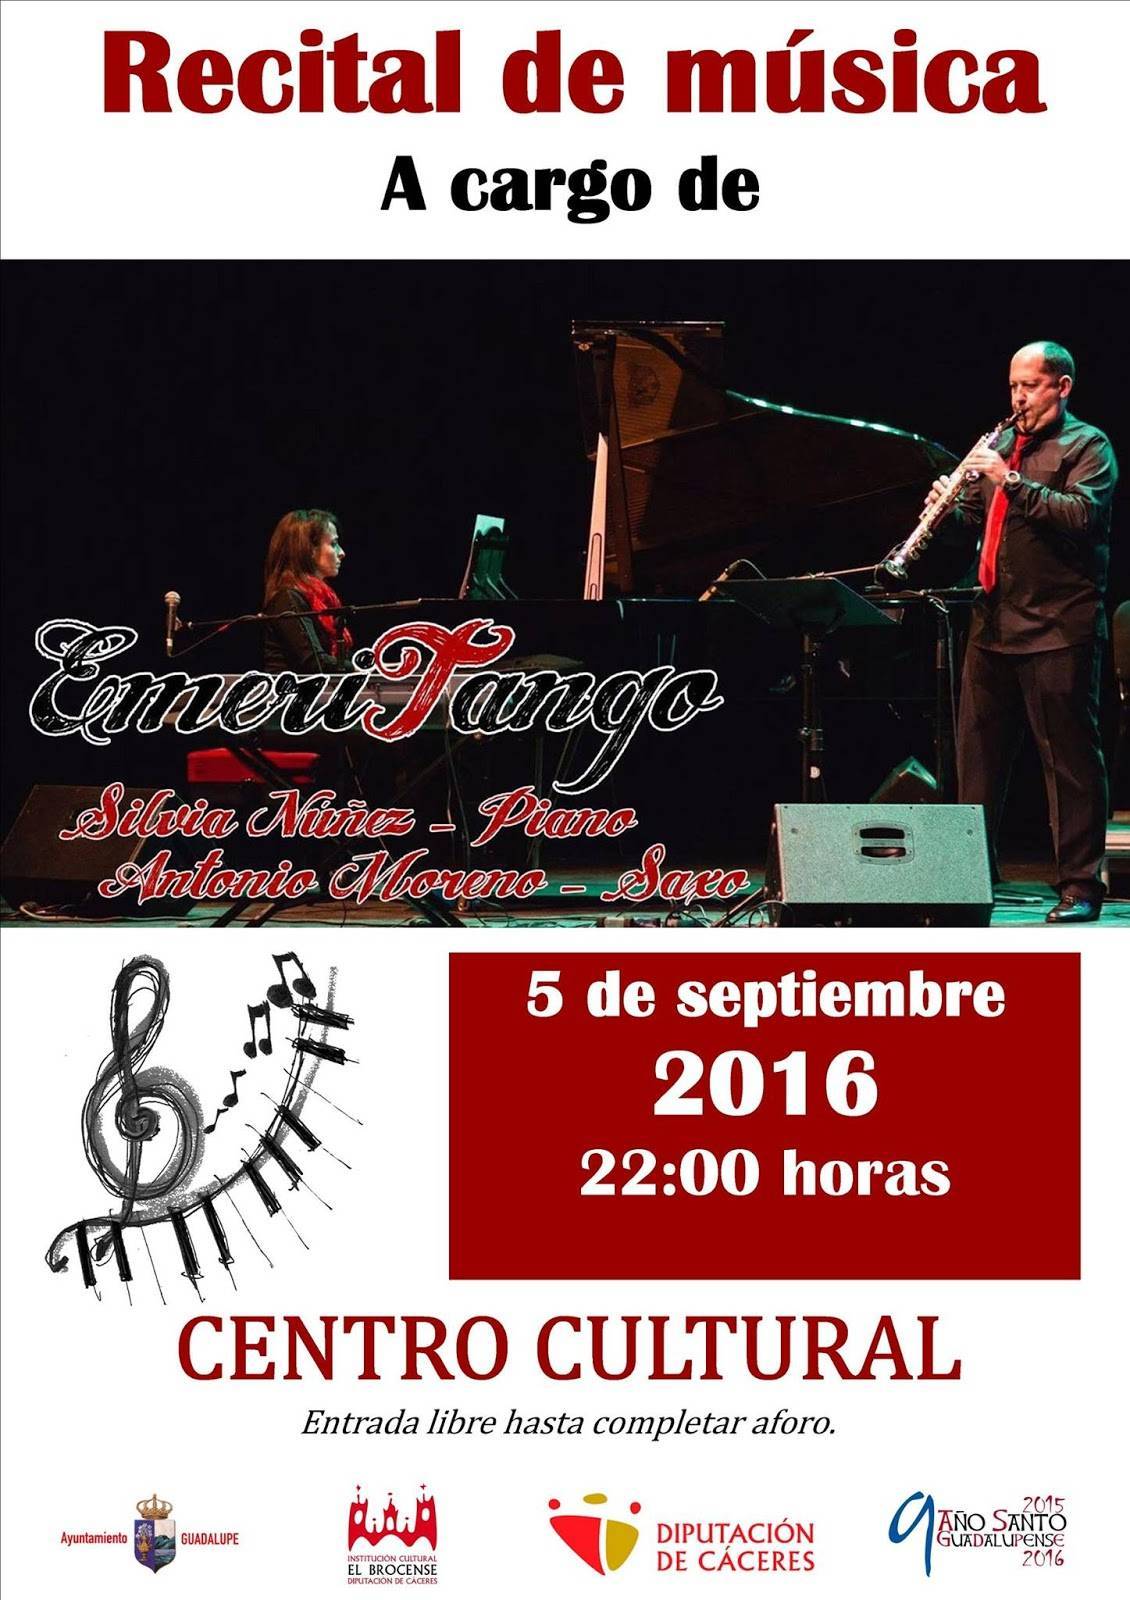 Recital de música Emeritango 2016 - Guadalupe (Cáceres)